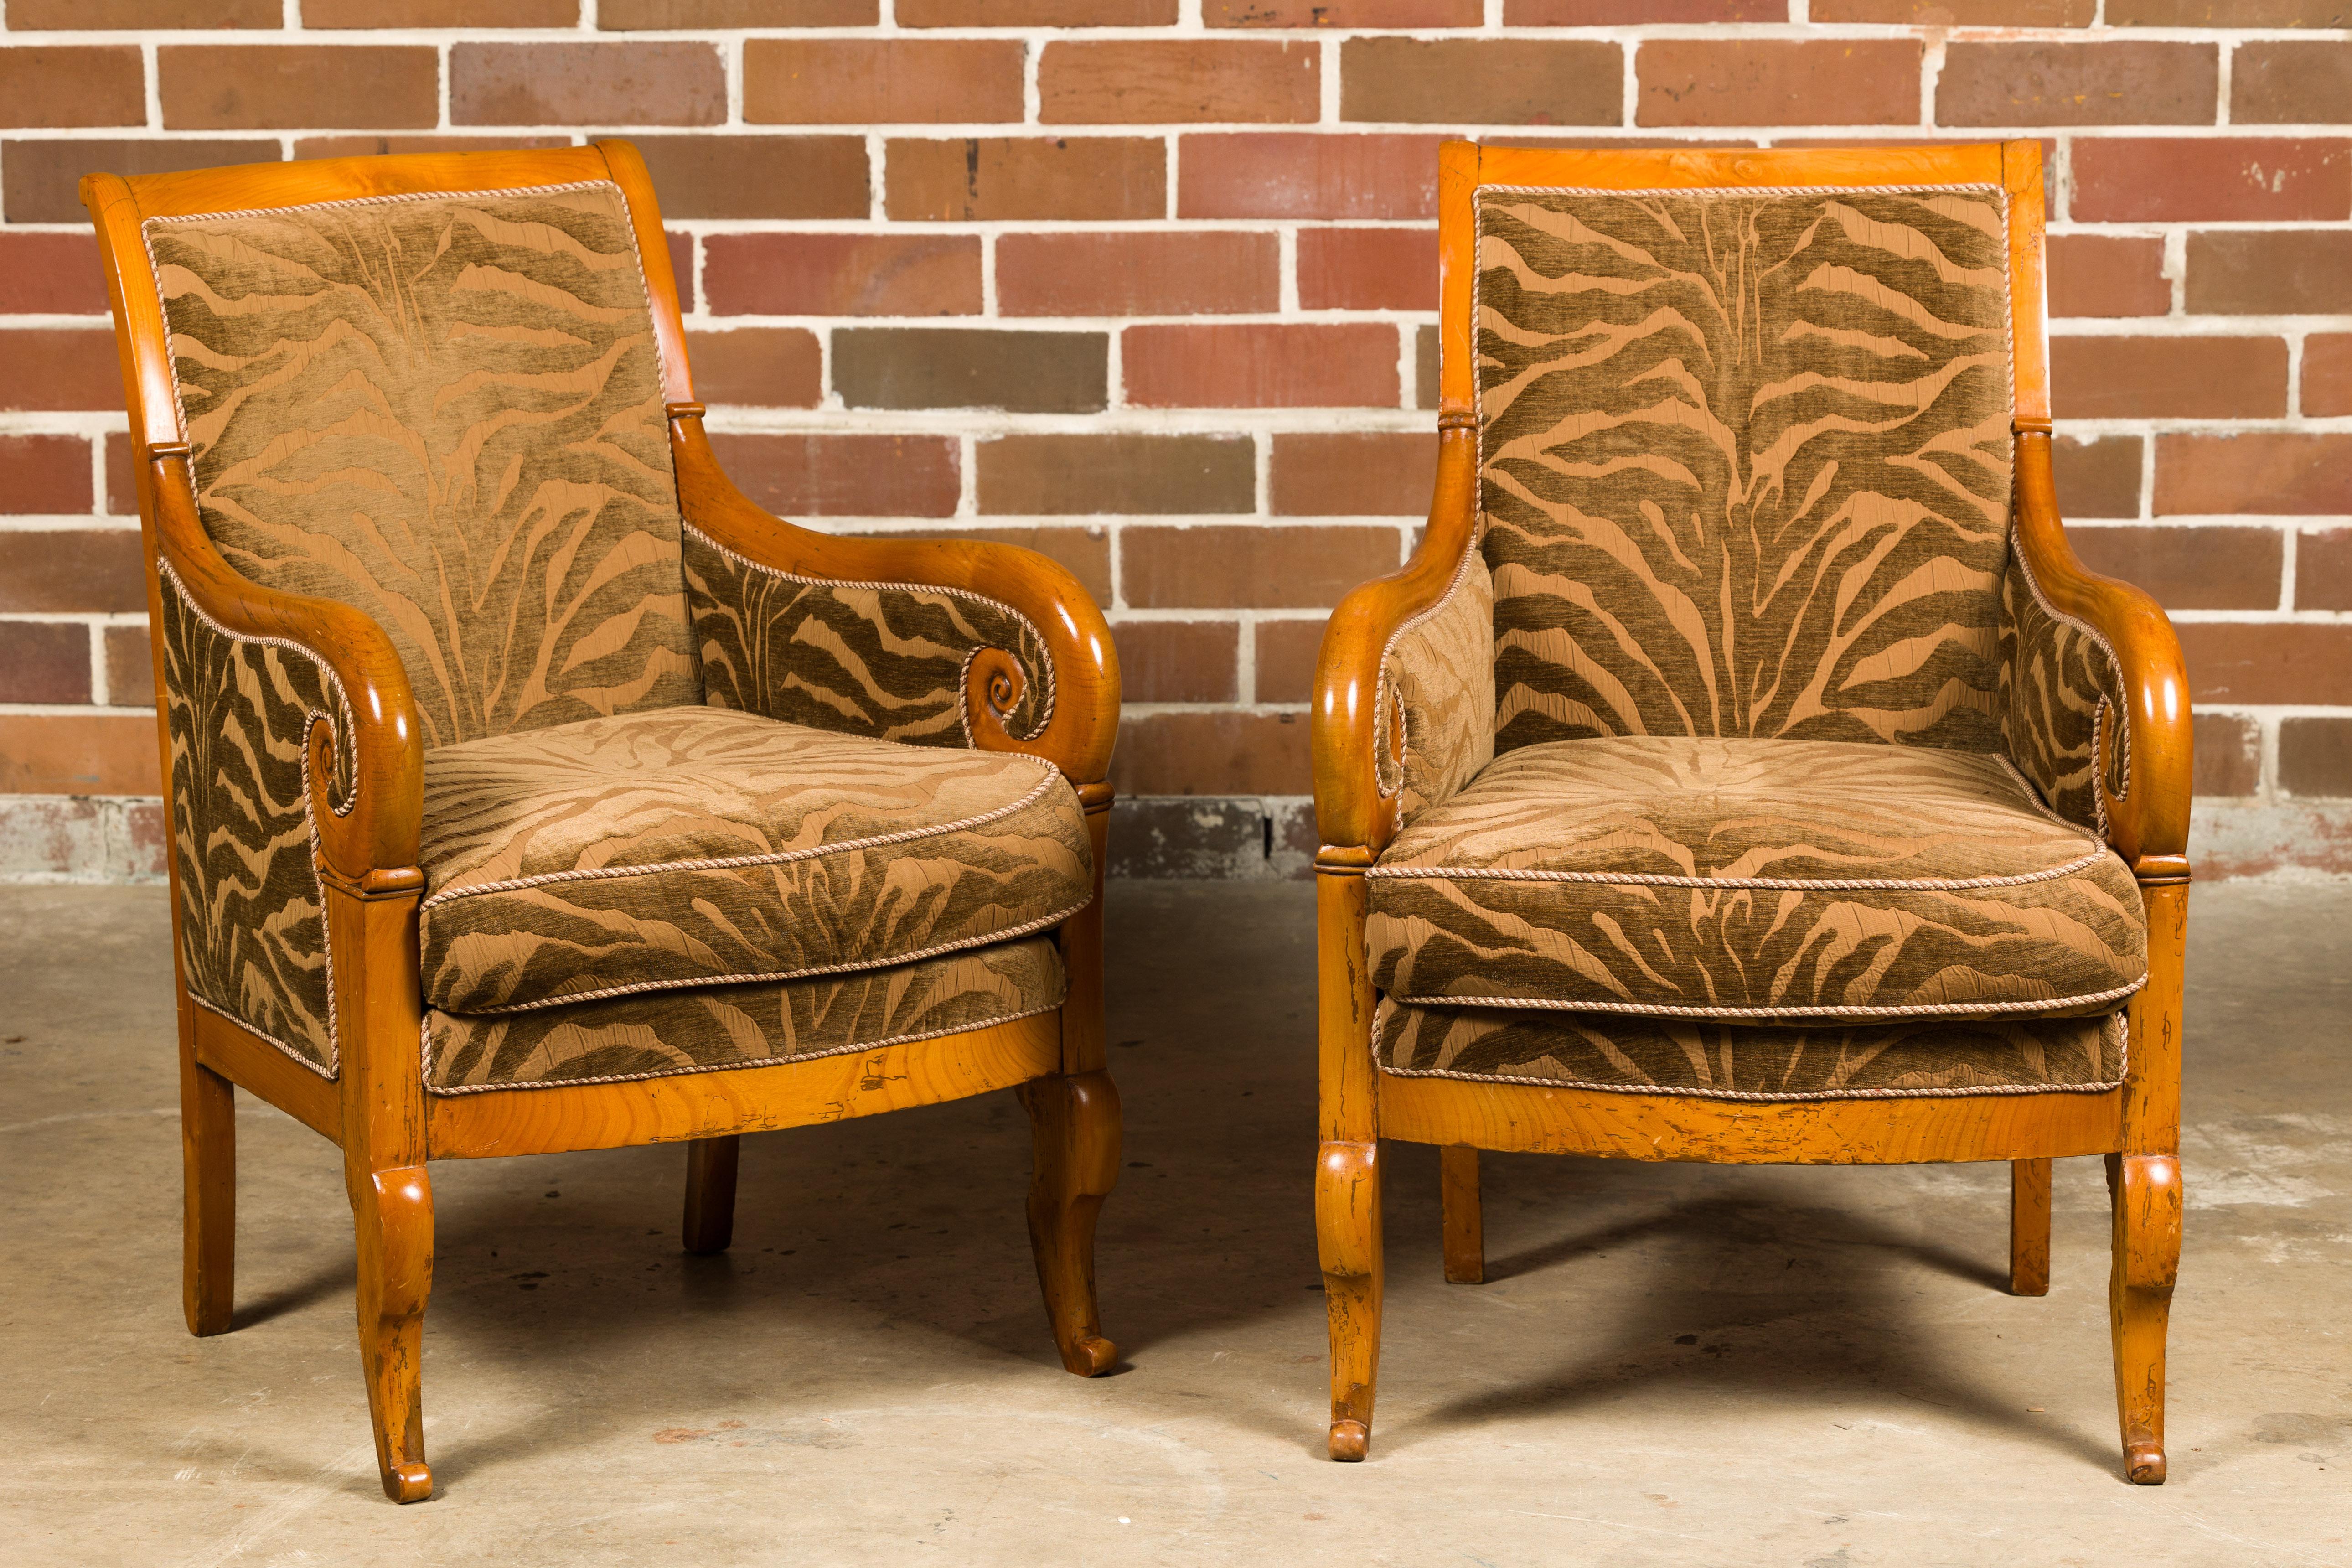 Paire de chaises bergère en noyer de style Louis Philippe du 19e siècle, avec des accoudoirs à volutes, des pieds avant sculptés et une tapisserie d'ameublement zébrée. Cette splendide paire de chaises bergère en noyer de style Louis Philippe,